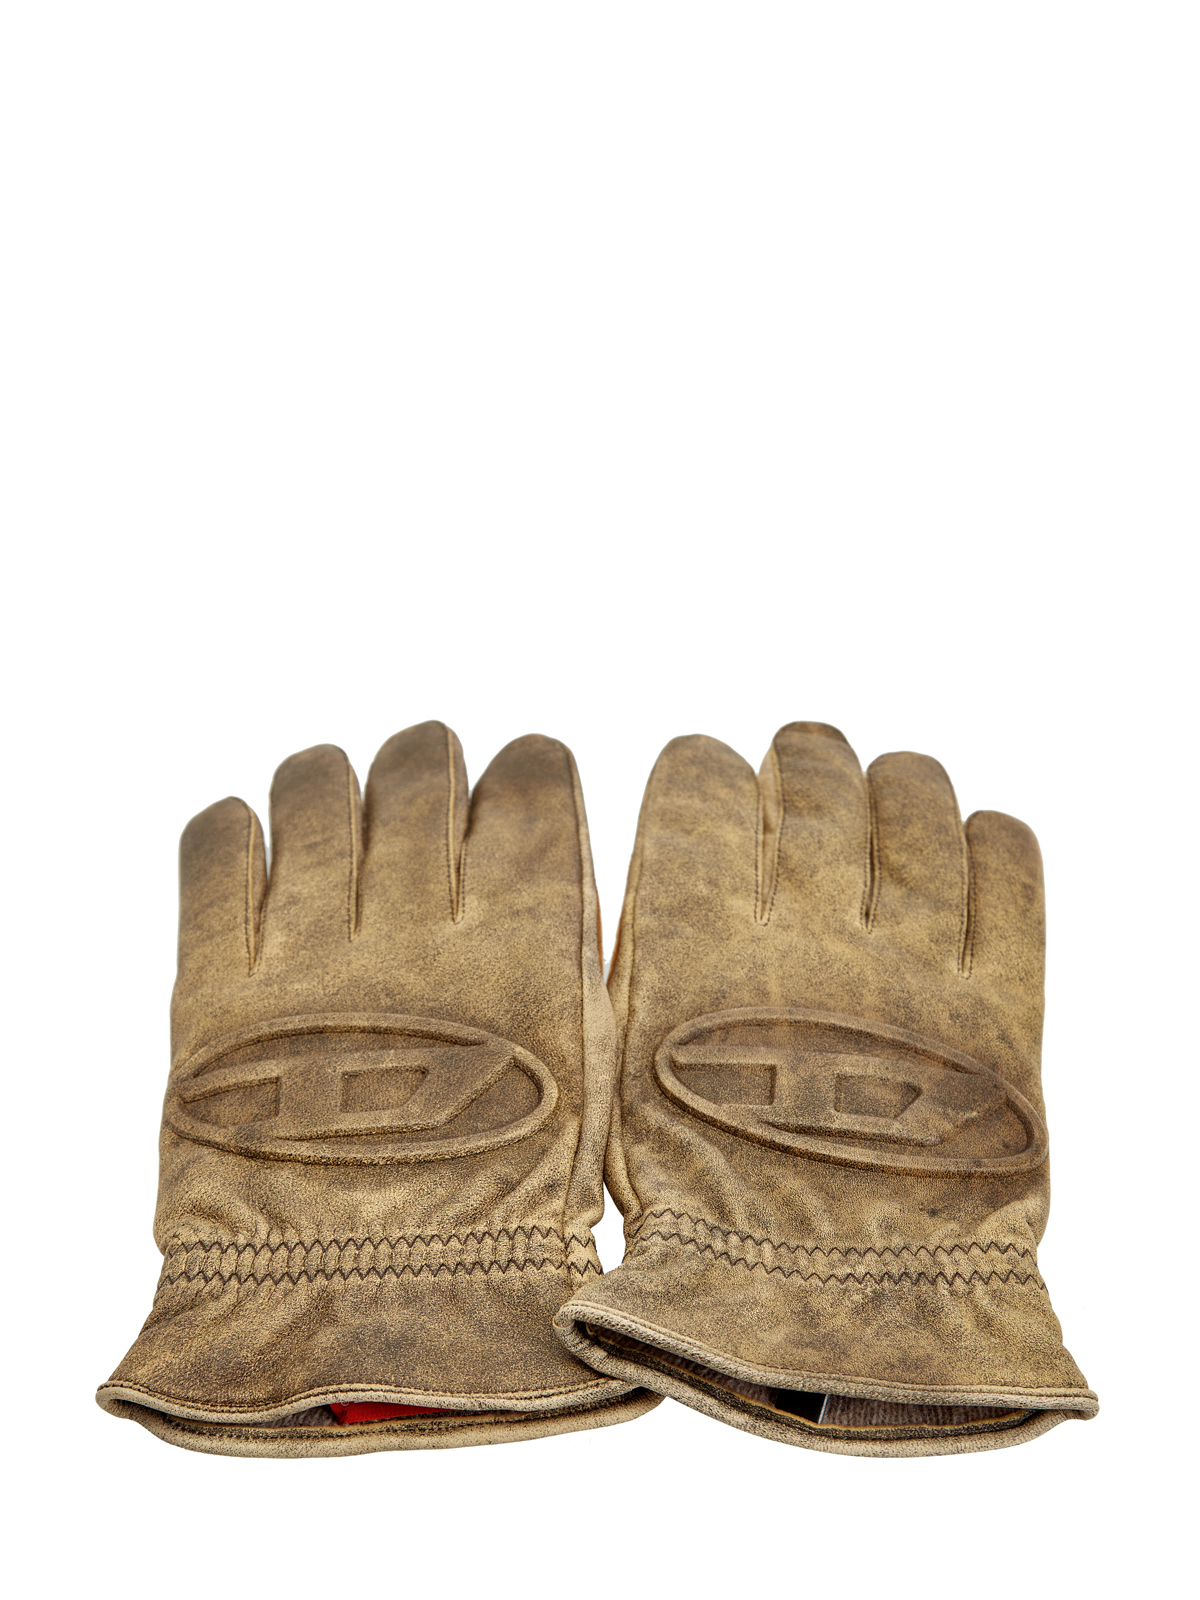 Кожаные перчатки G-Alb с подкладкой из шерсти и логотипом DIESEL, цвет коричневый, размер M - фото 2